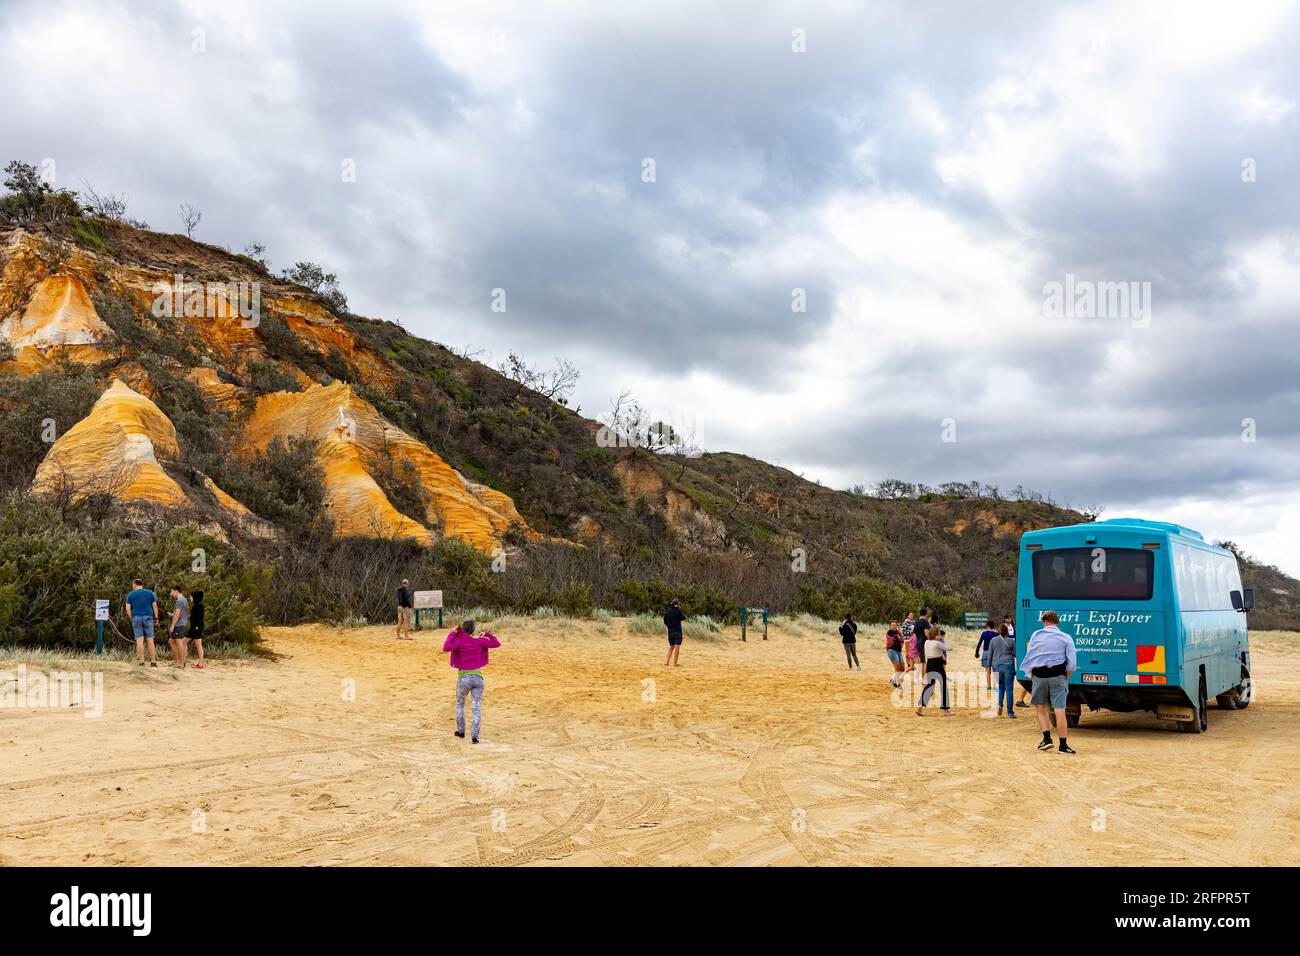 Fraser Island K'gari, bus touristique explorateur sur la plage de 75 miles aux Pinnacles alors que les touristes regardaient les sables colorés, Queensland, Australie Banque D'Images